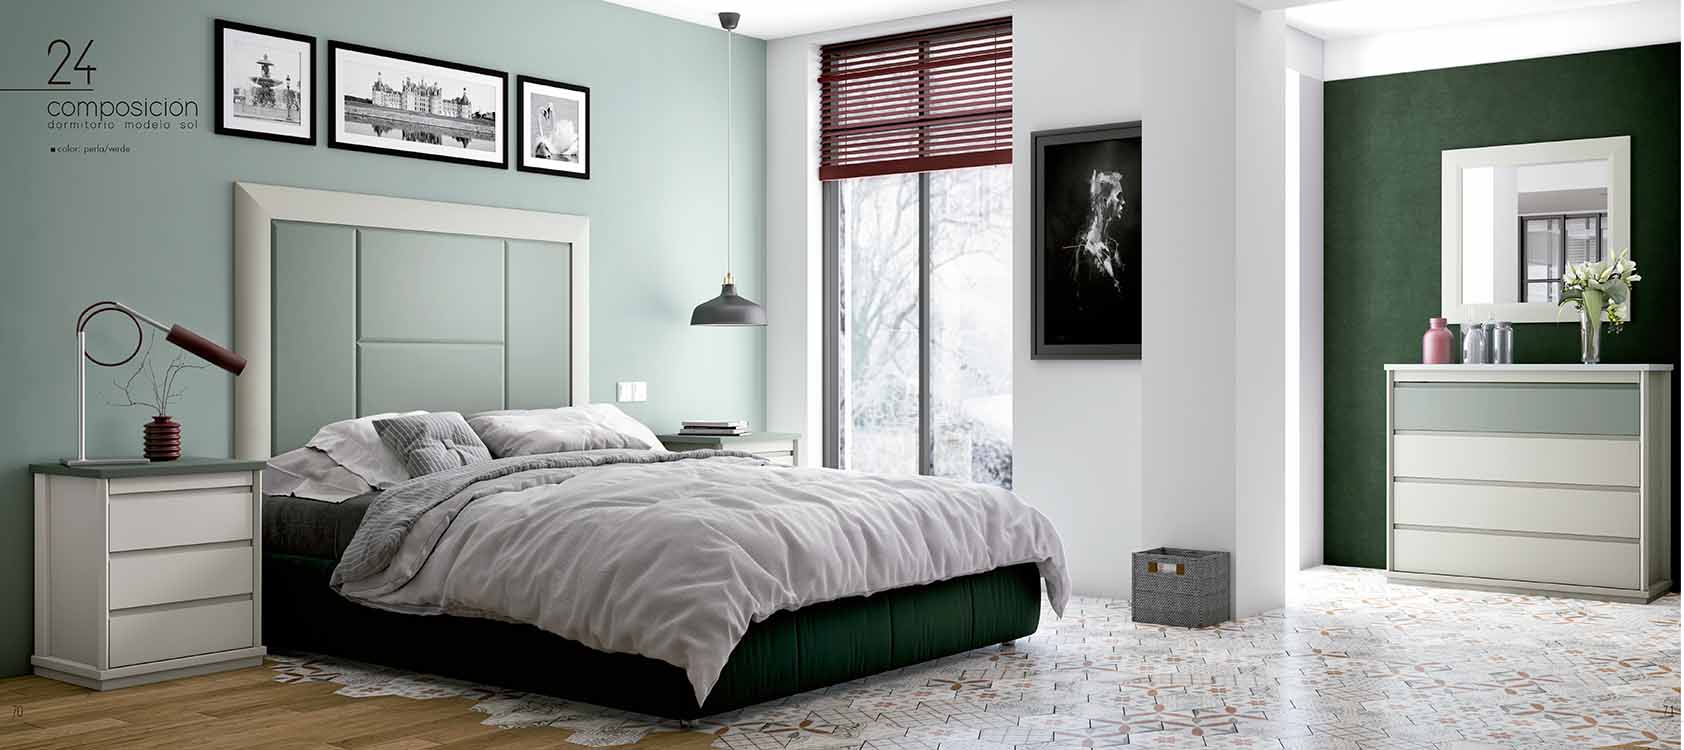 http://www.munozmuebles.net/nueva/catalogo/dormitorios-clasicos.html - Fotos con 
muebles de color decapado